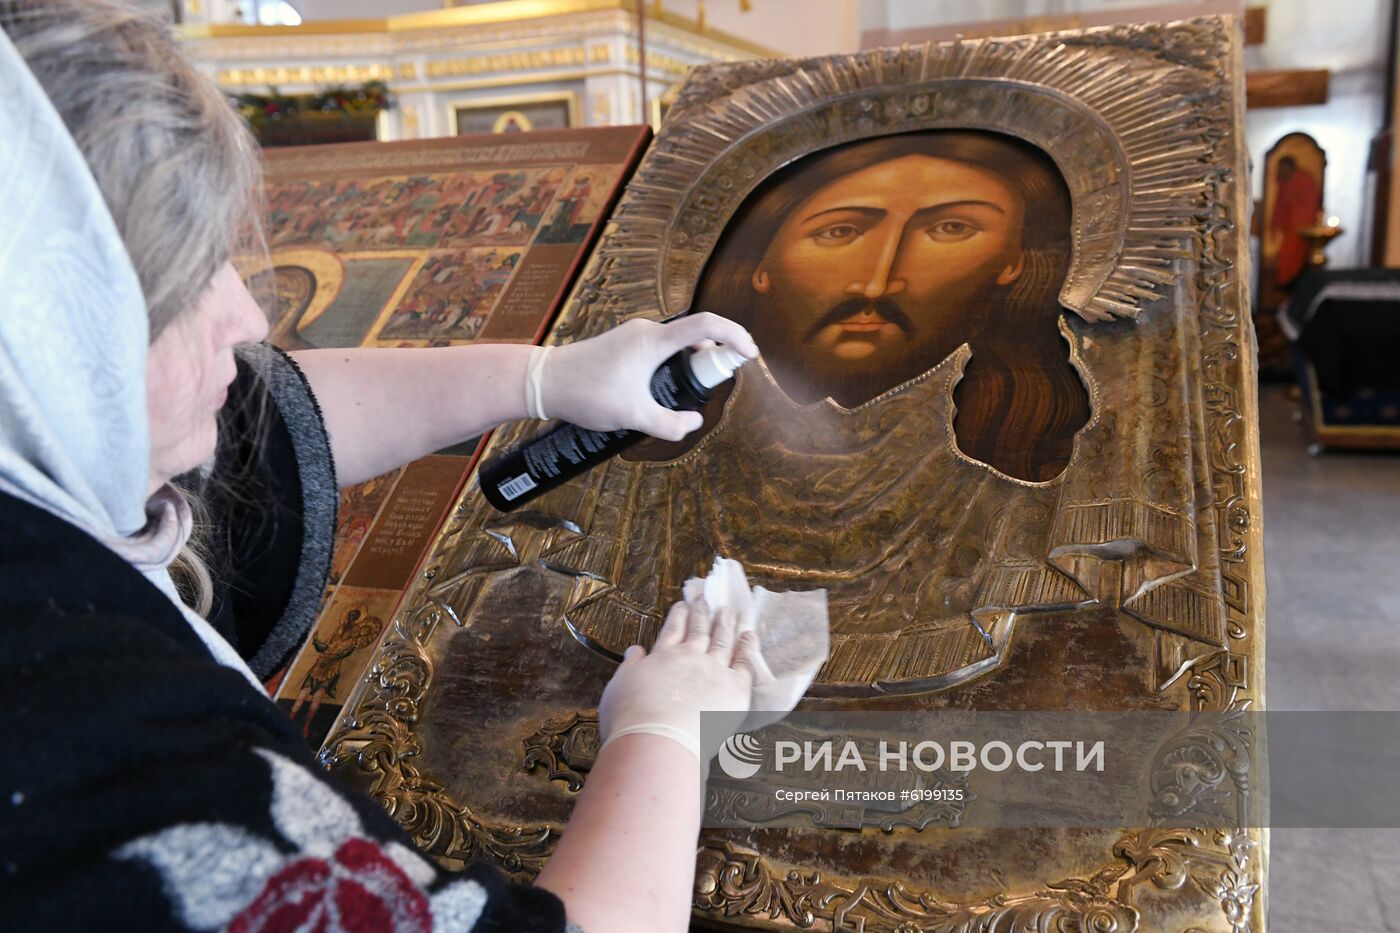 Меры по профилактике коронавируса в храме Святителя Алексия в Рогожской слободе 